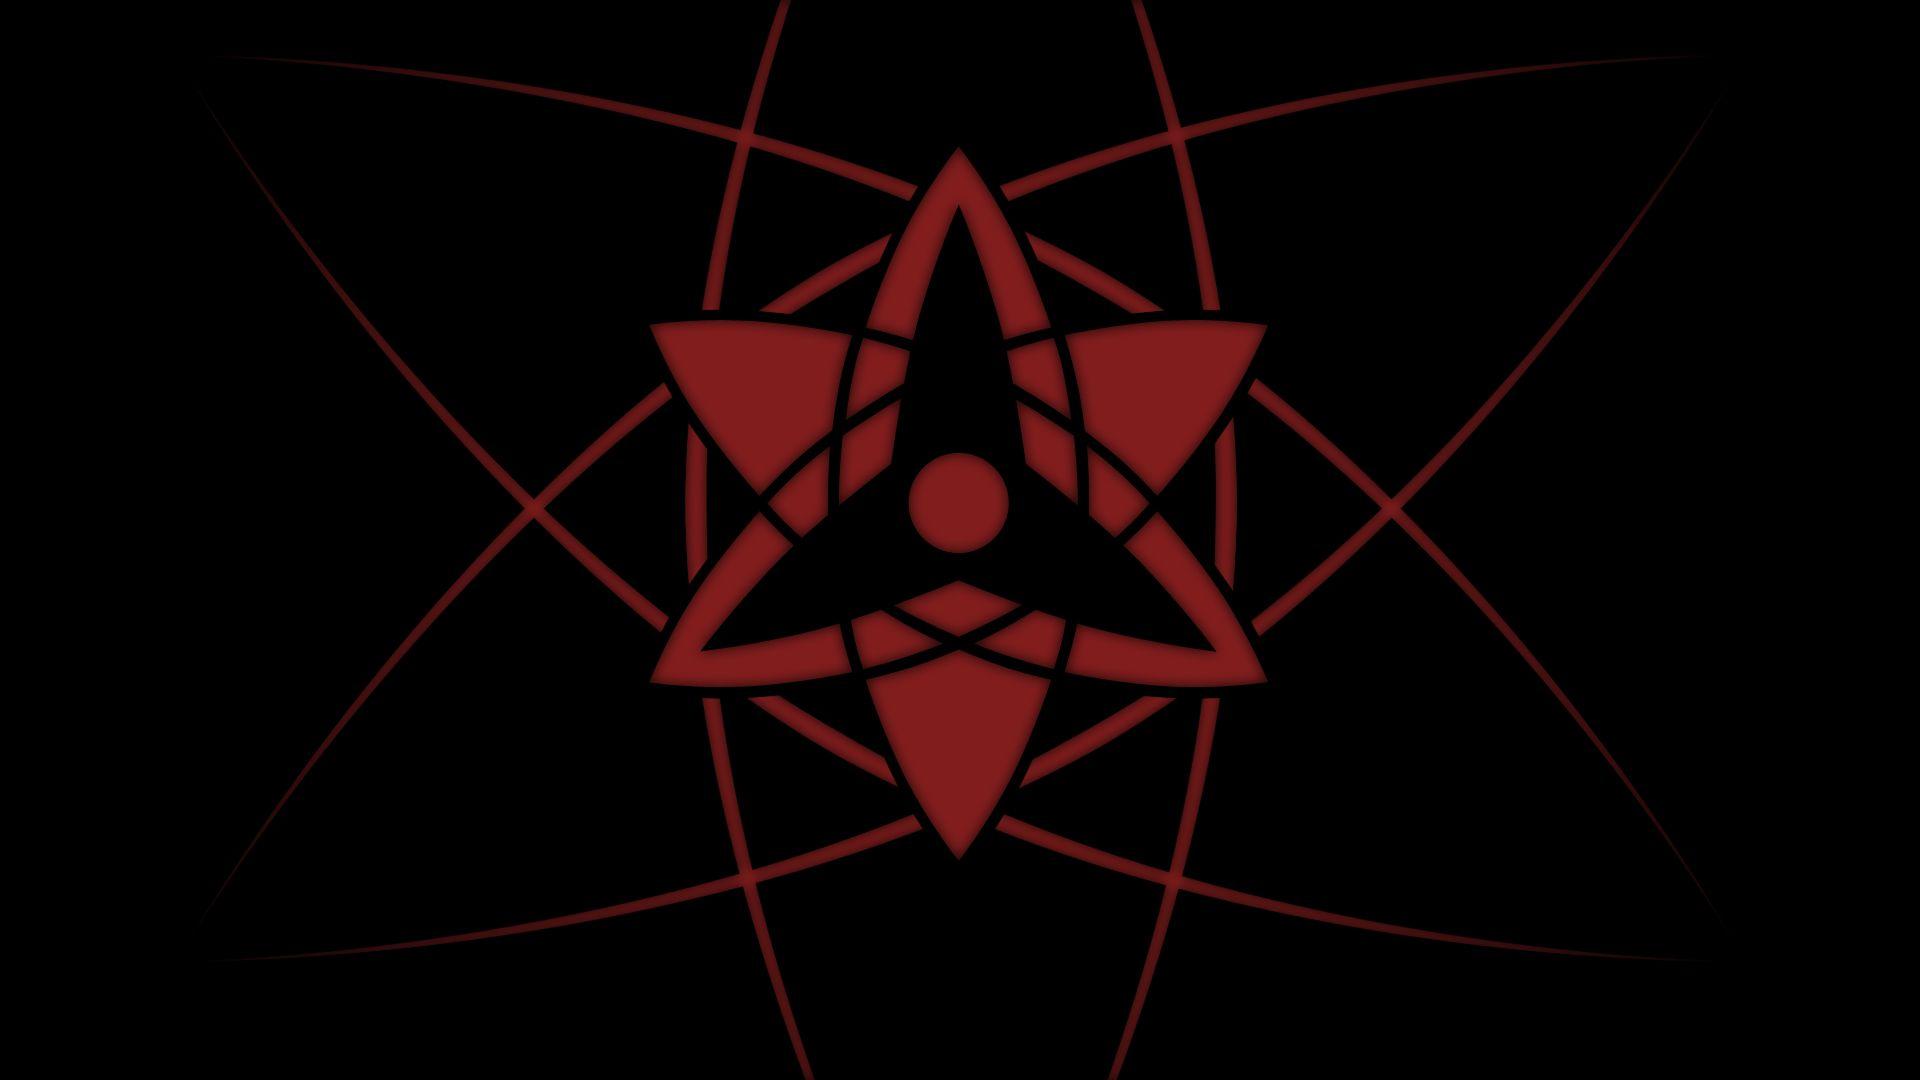 Uchiha Clan Symbol